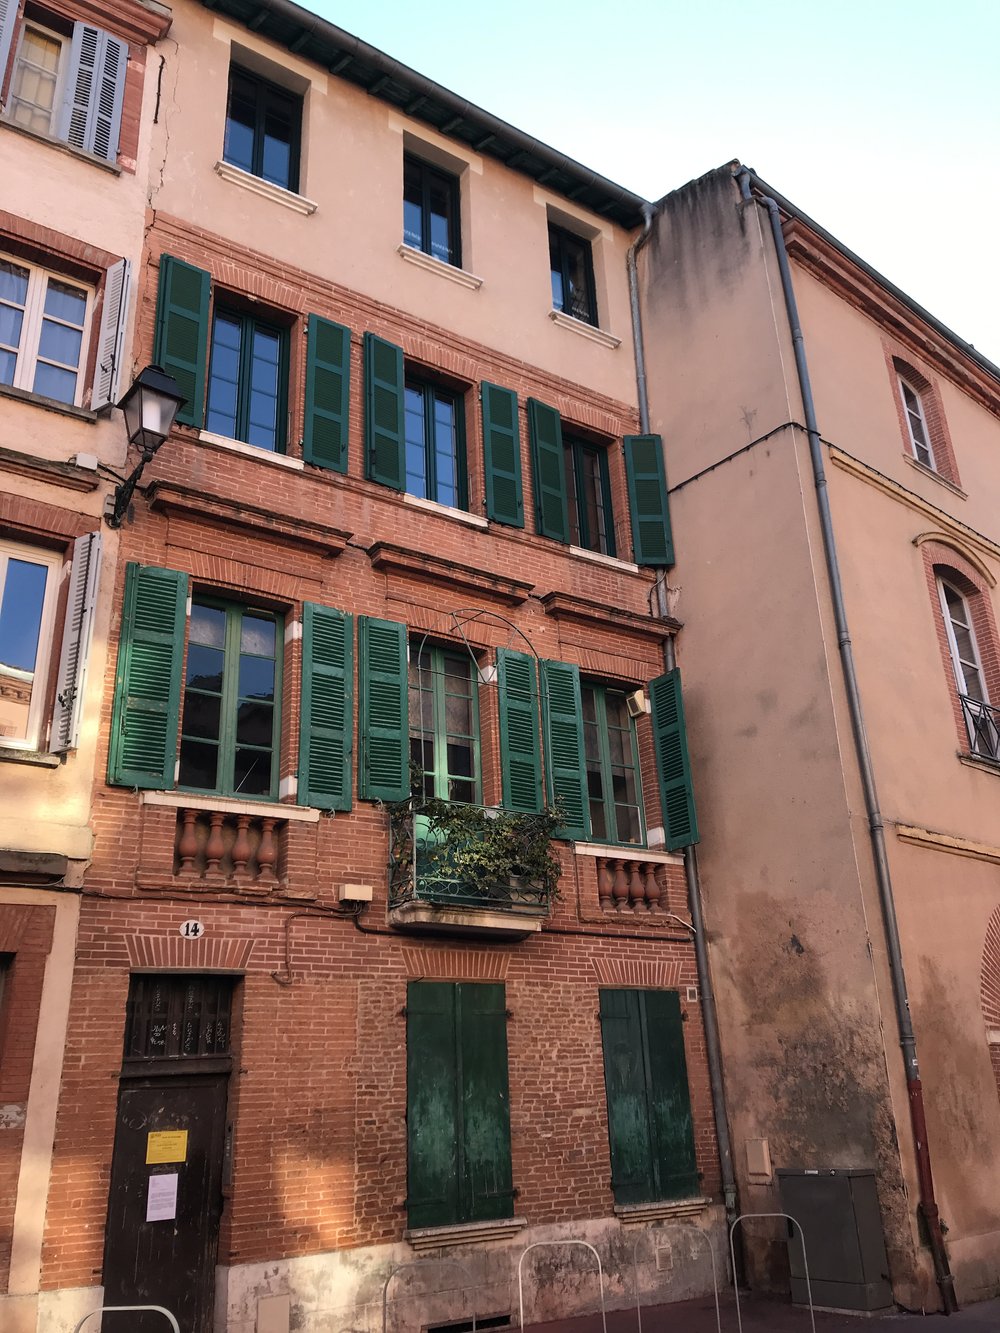 La Ville Rose, Toulouse, France